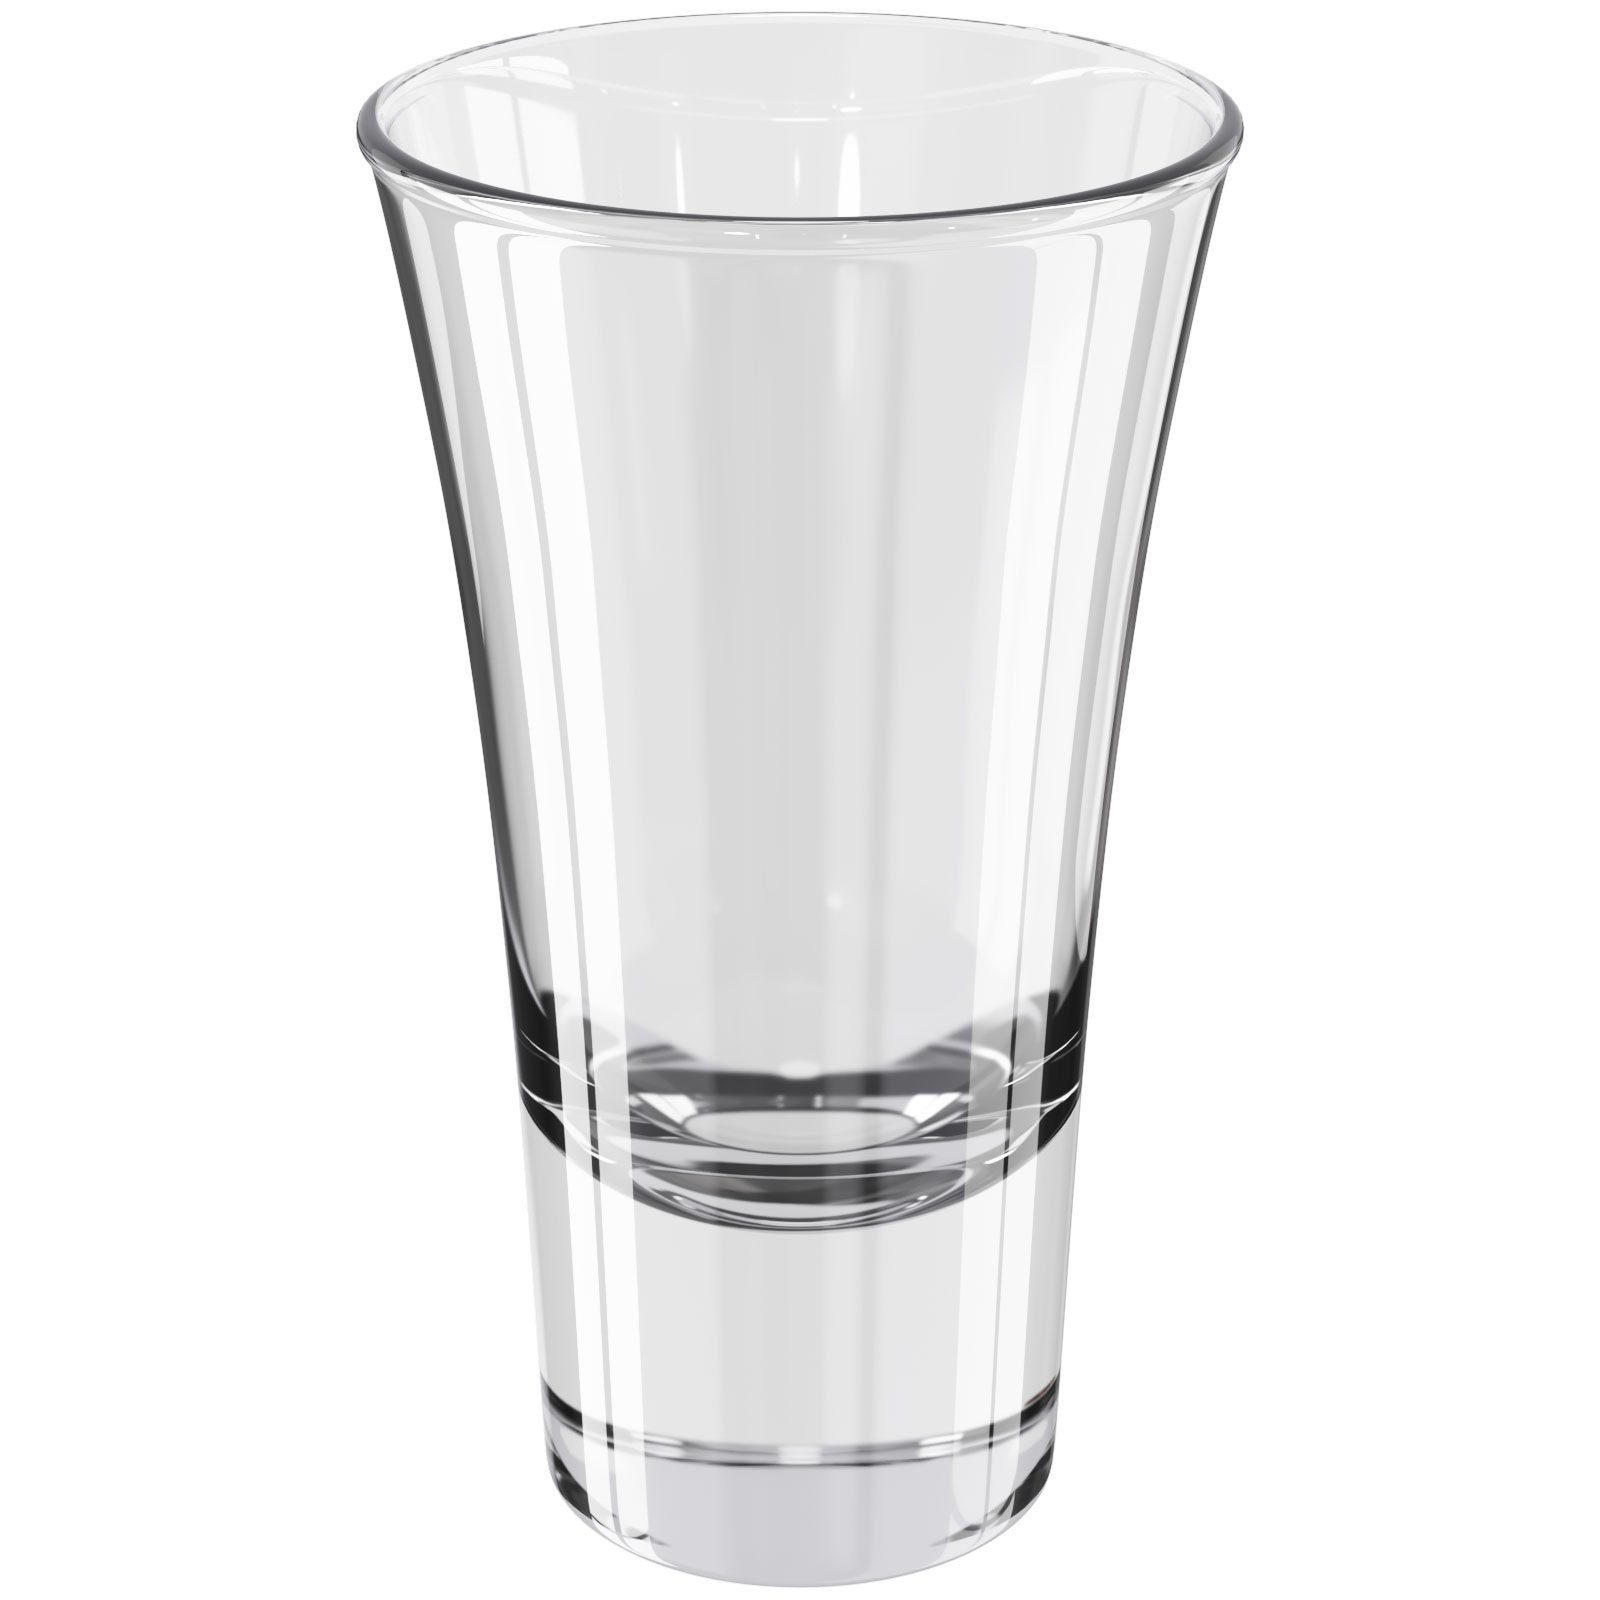 x Schnapsgläser Shotgläser - Glas 5,7cl - 8,8 Wellgro (xH) cm Wellgro 5,2